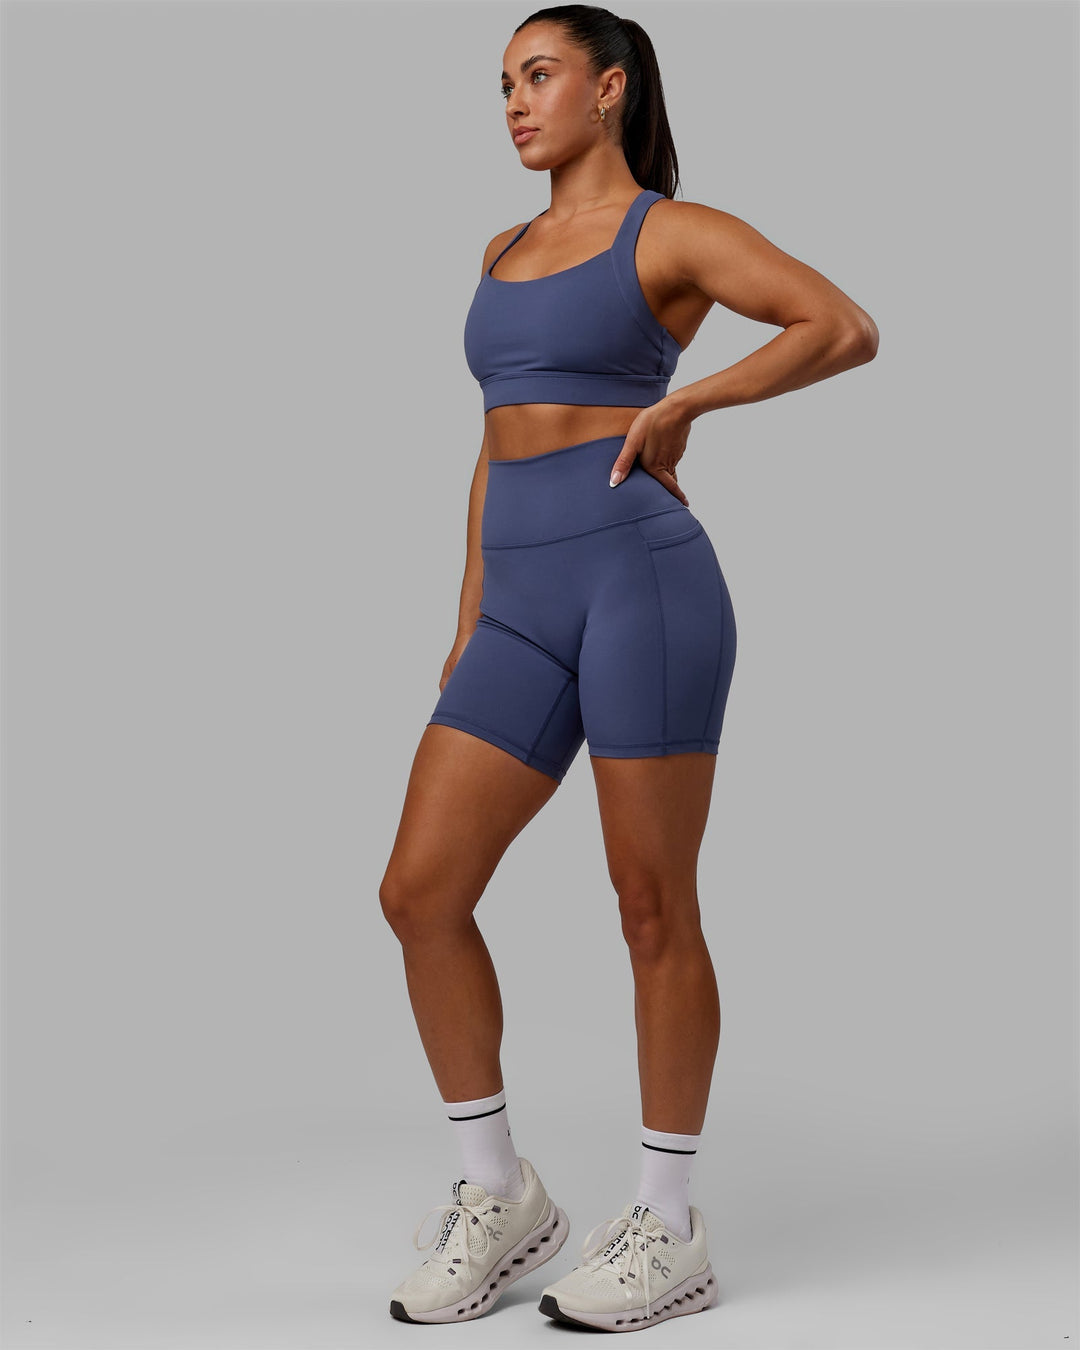 Woman wearing Advance Sports Bra - Future Dusk